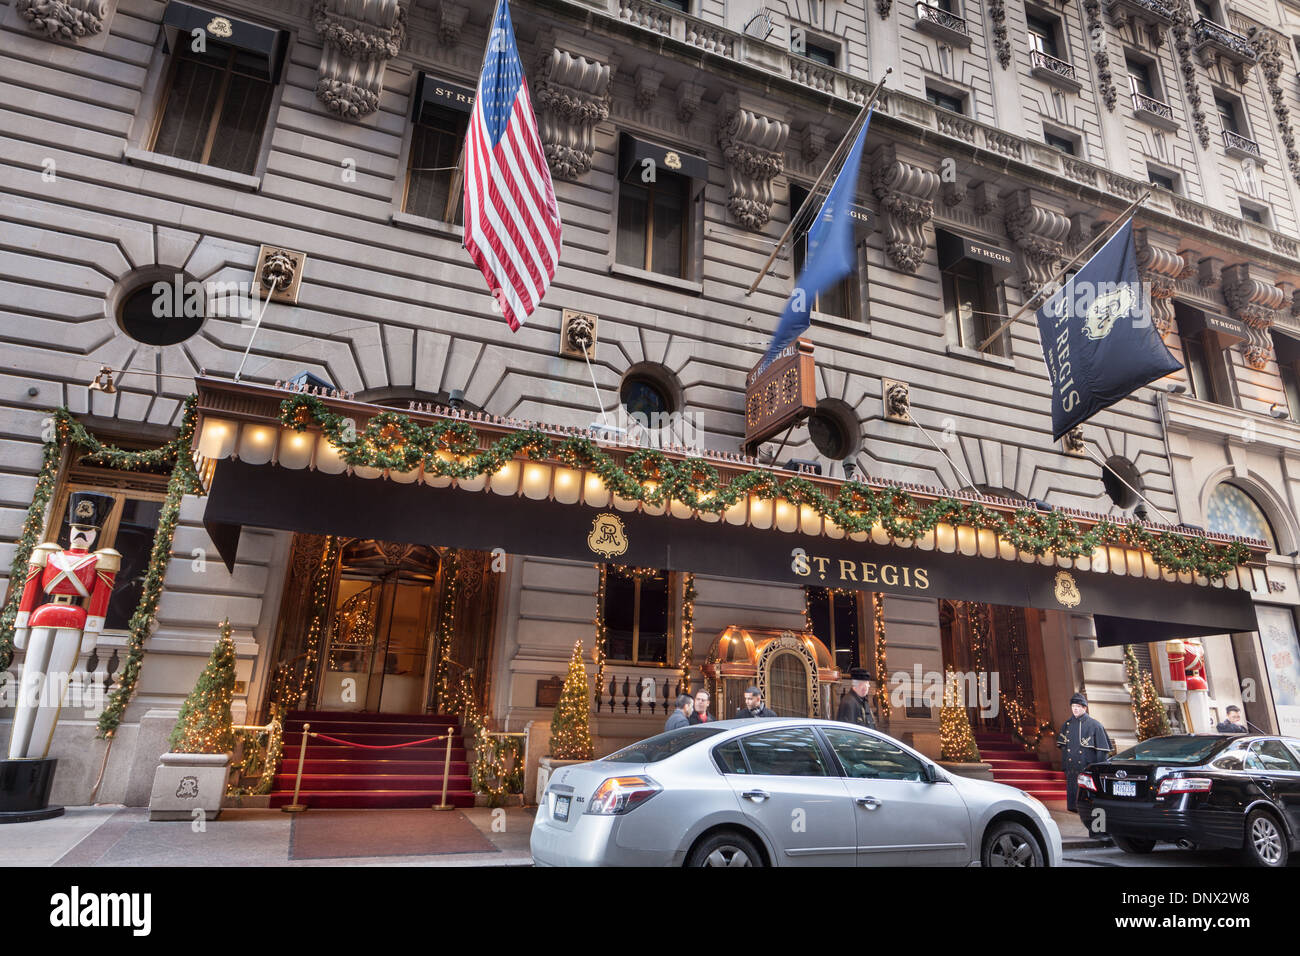 St. Regis Hotel, Beaux-Arts hôtel de luxe classique conçu par John Jacob Astor, Midtown Manhattan, New York City, Etats-Unis. Banque D'Images